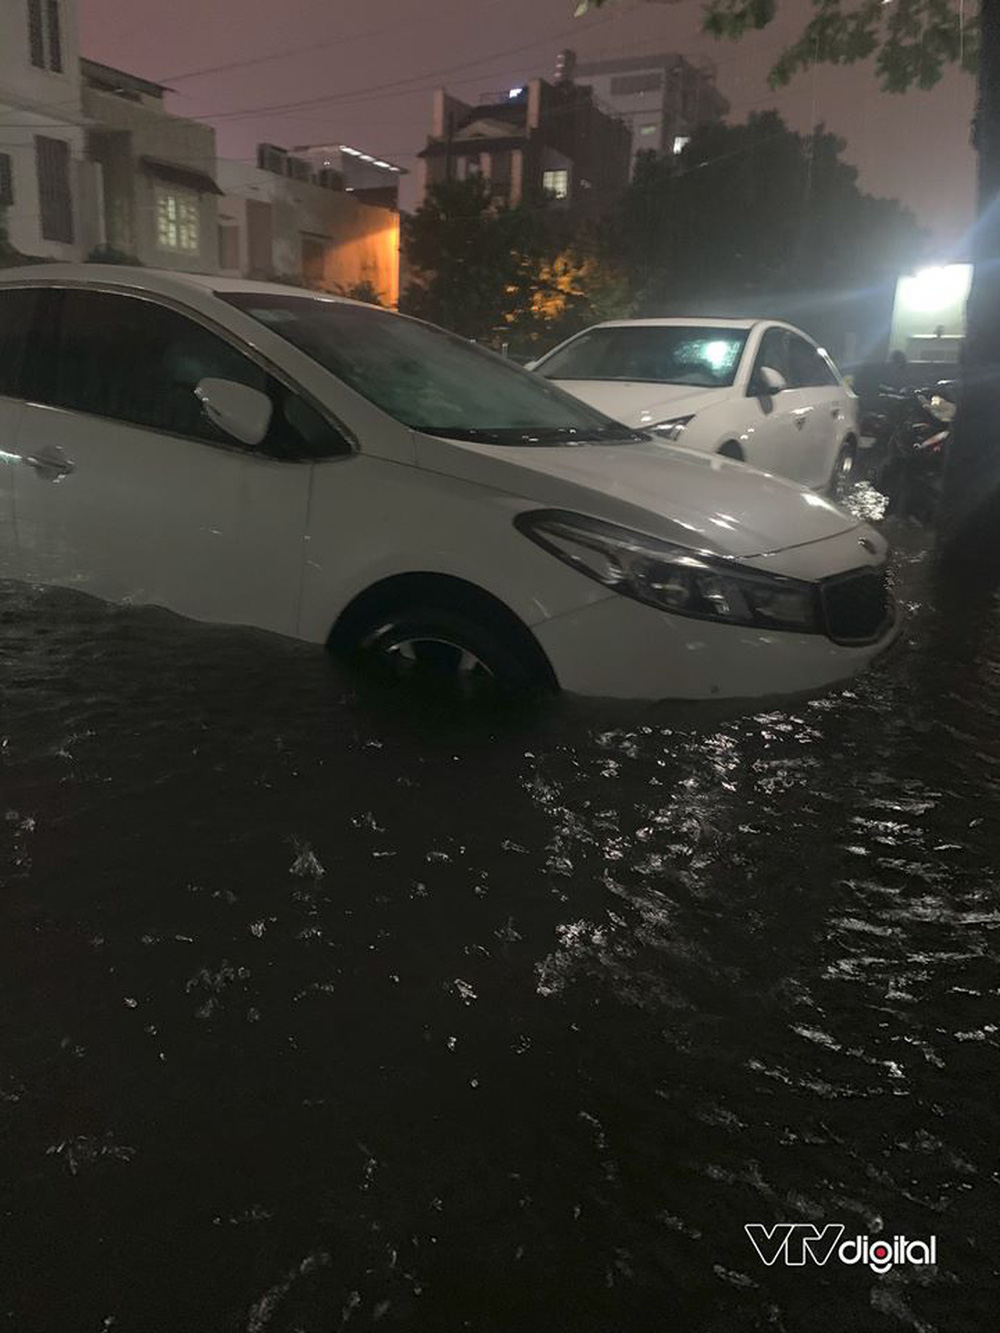 Đường phố TP.HCM ngập nặng, biến thành sông sau cơn mưa lớn tối 6/8 - Ảnh 2.